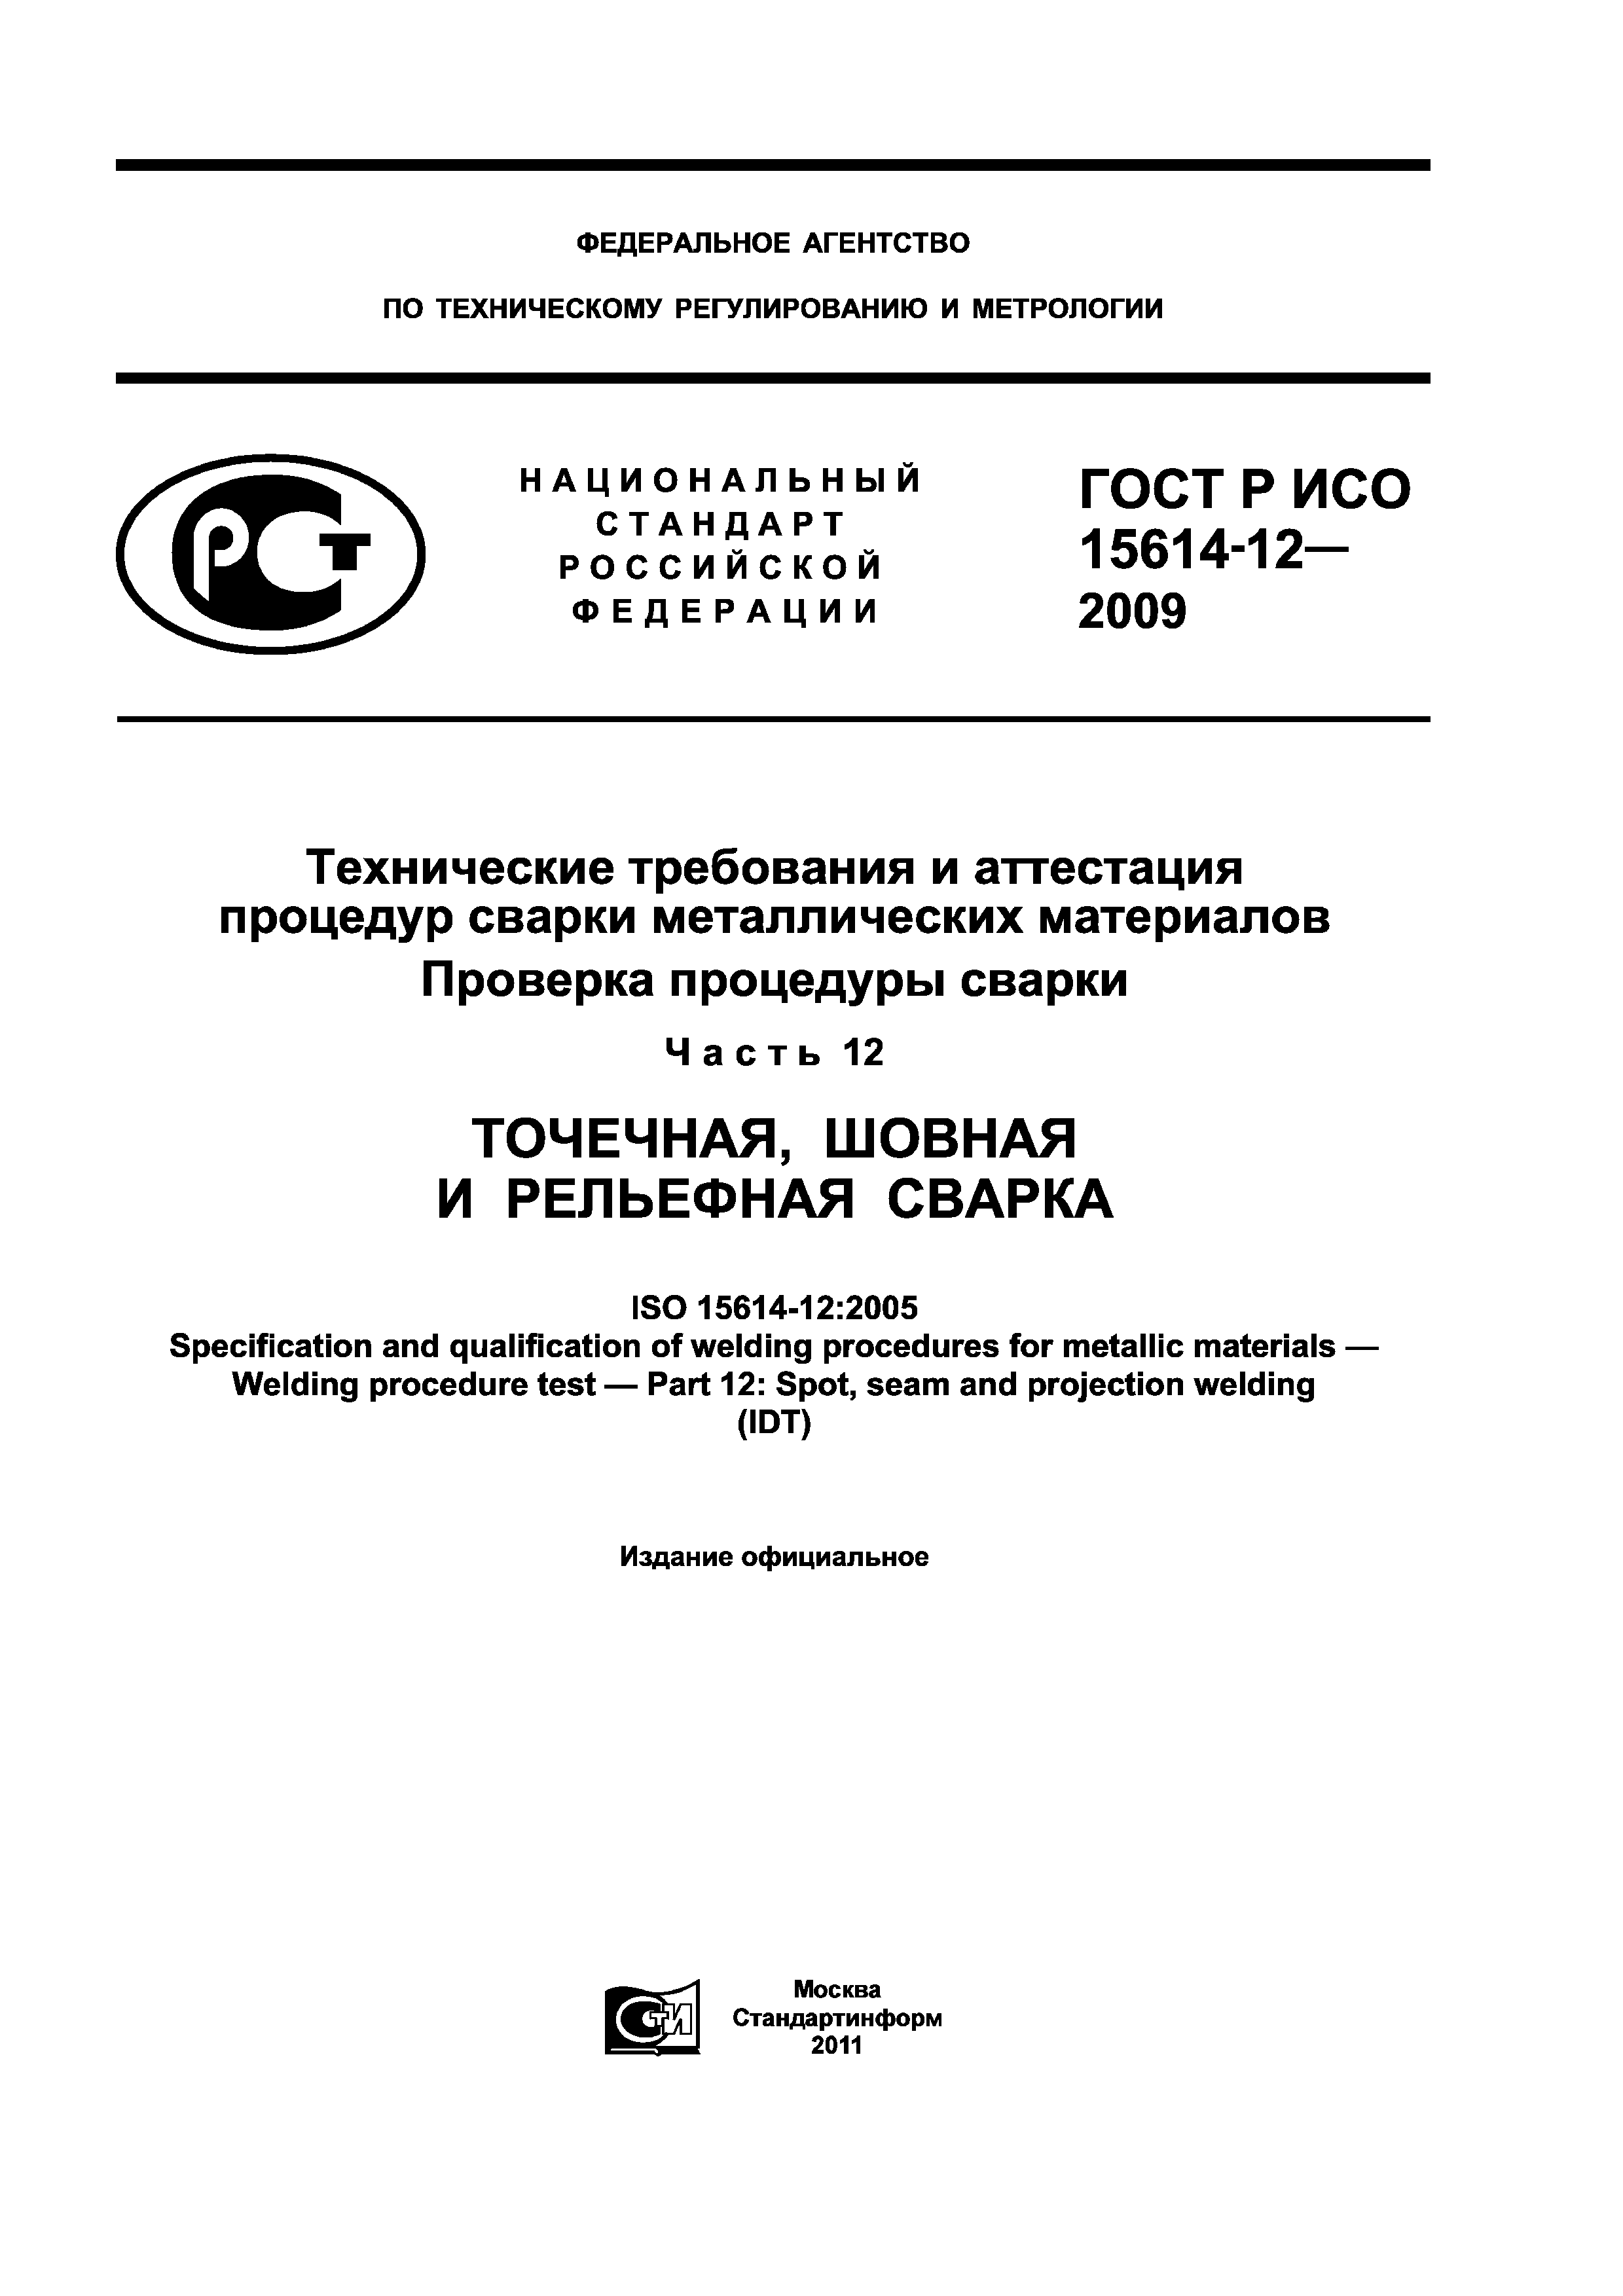 ГОСТ Р ИСО 15614-12-2009